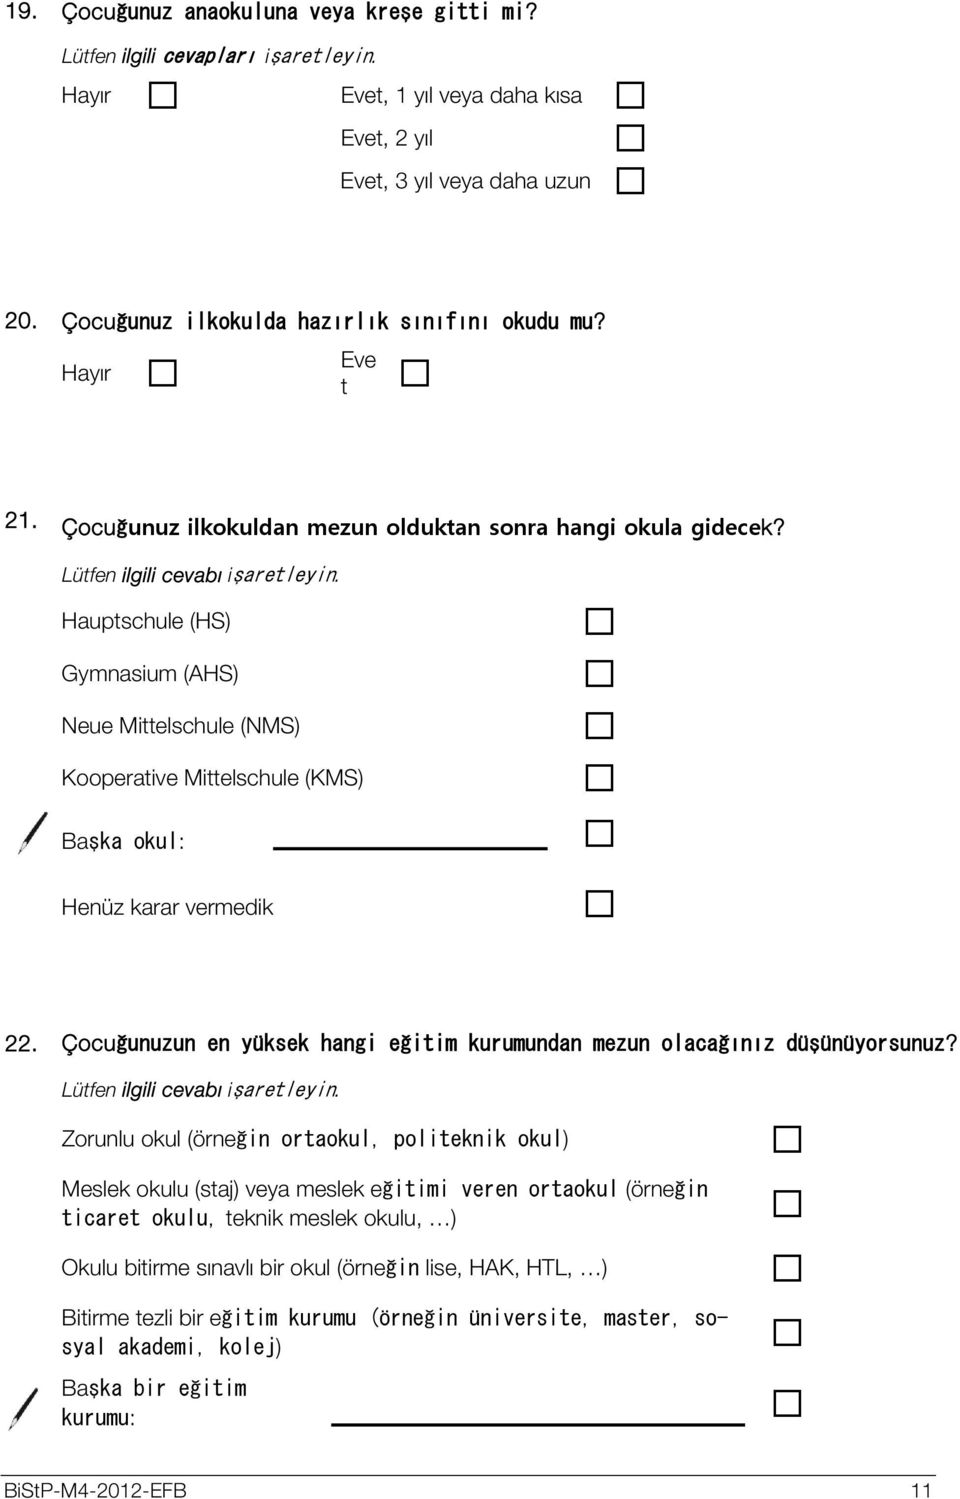 Huptschule (HS) Gymnsium (AHS) Neue Mittelschule (NMS) Koopertive Mittelschule (KMS) Bşk okul: Henüz krr vermedik 22. Çocuğunuzun en yüksek hngi eğitim kurumundn mezun olcğınız düşünüyorsunuz?